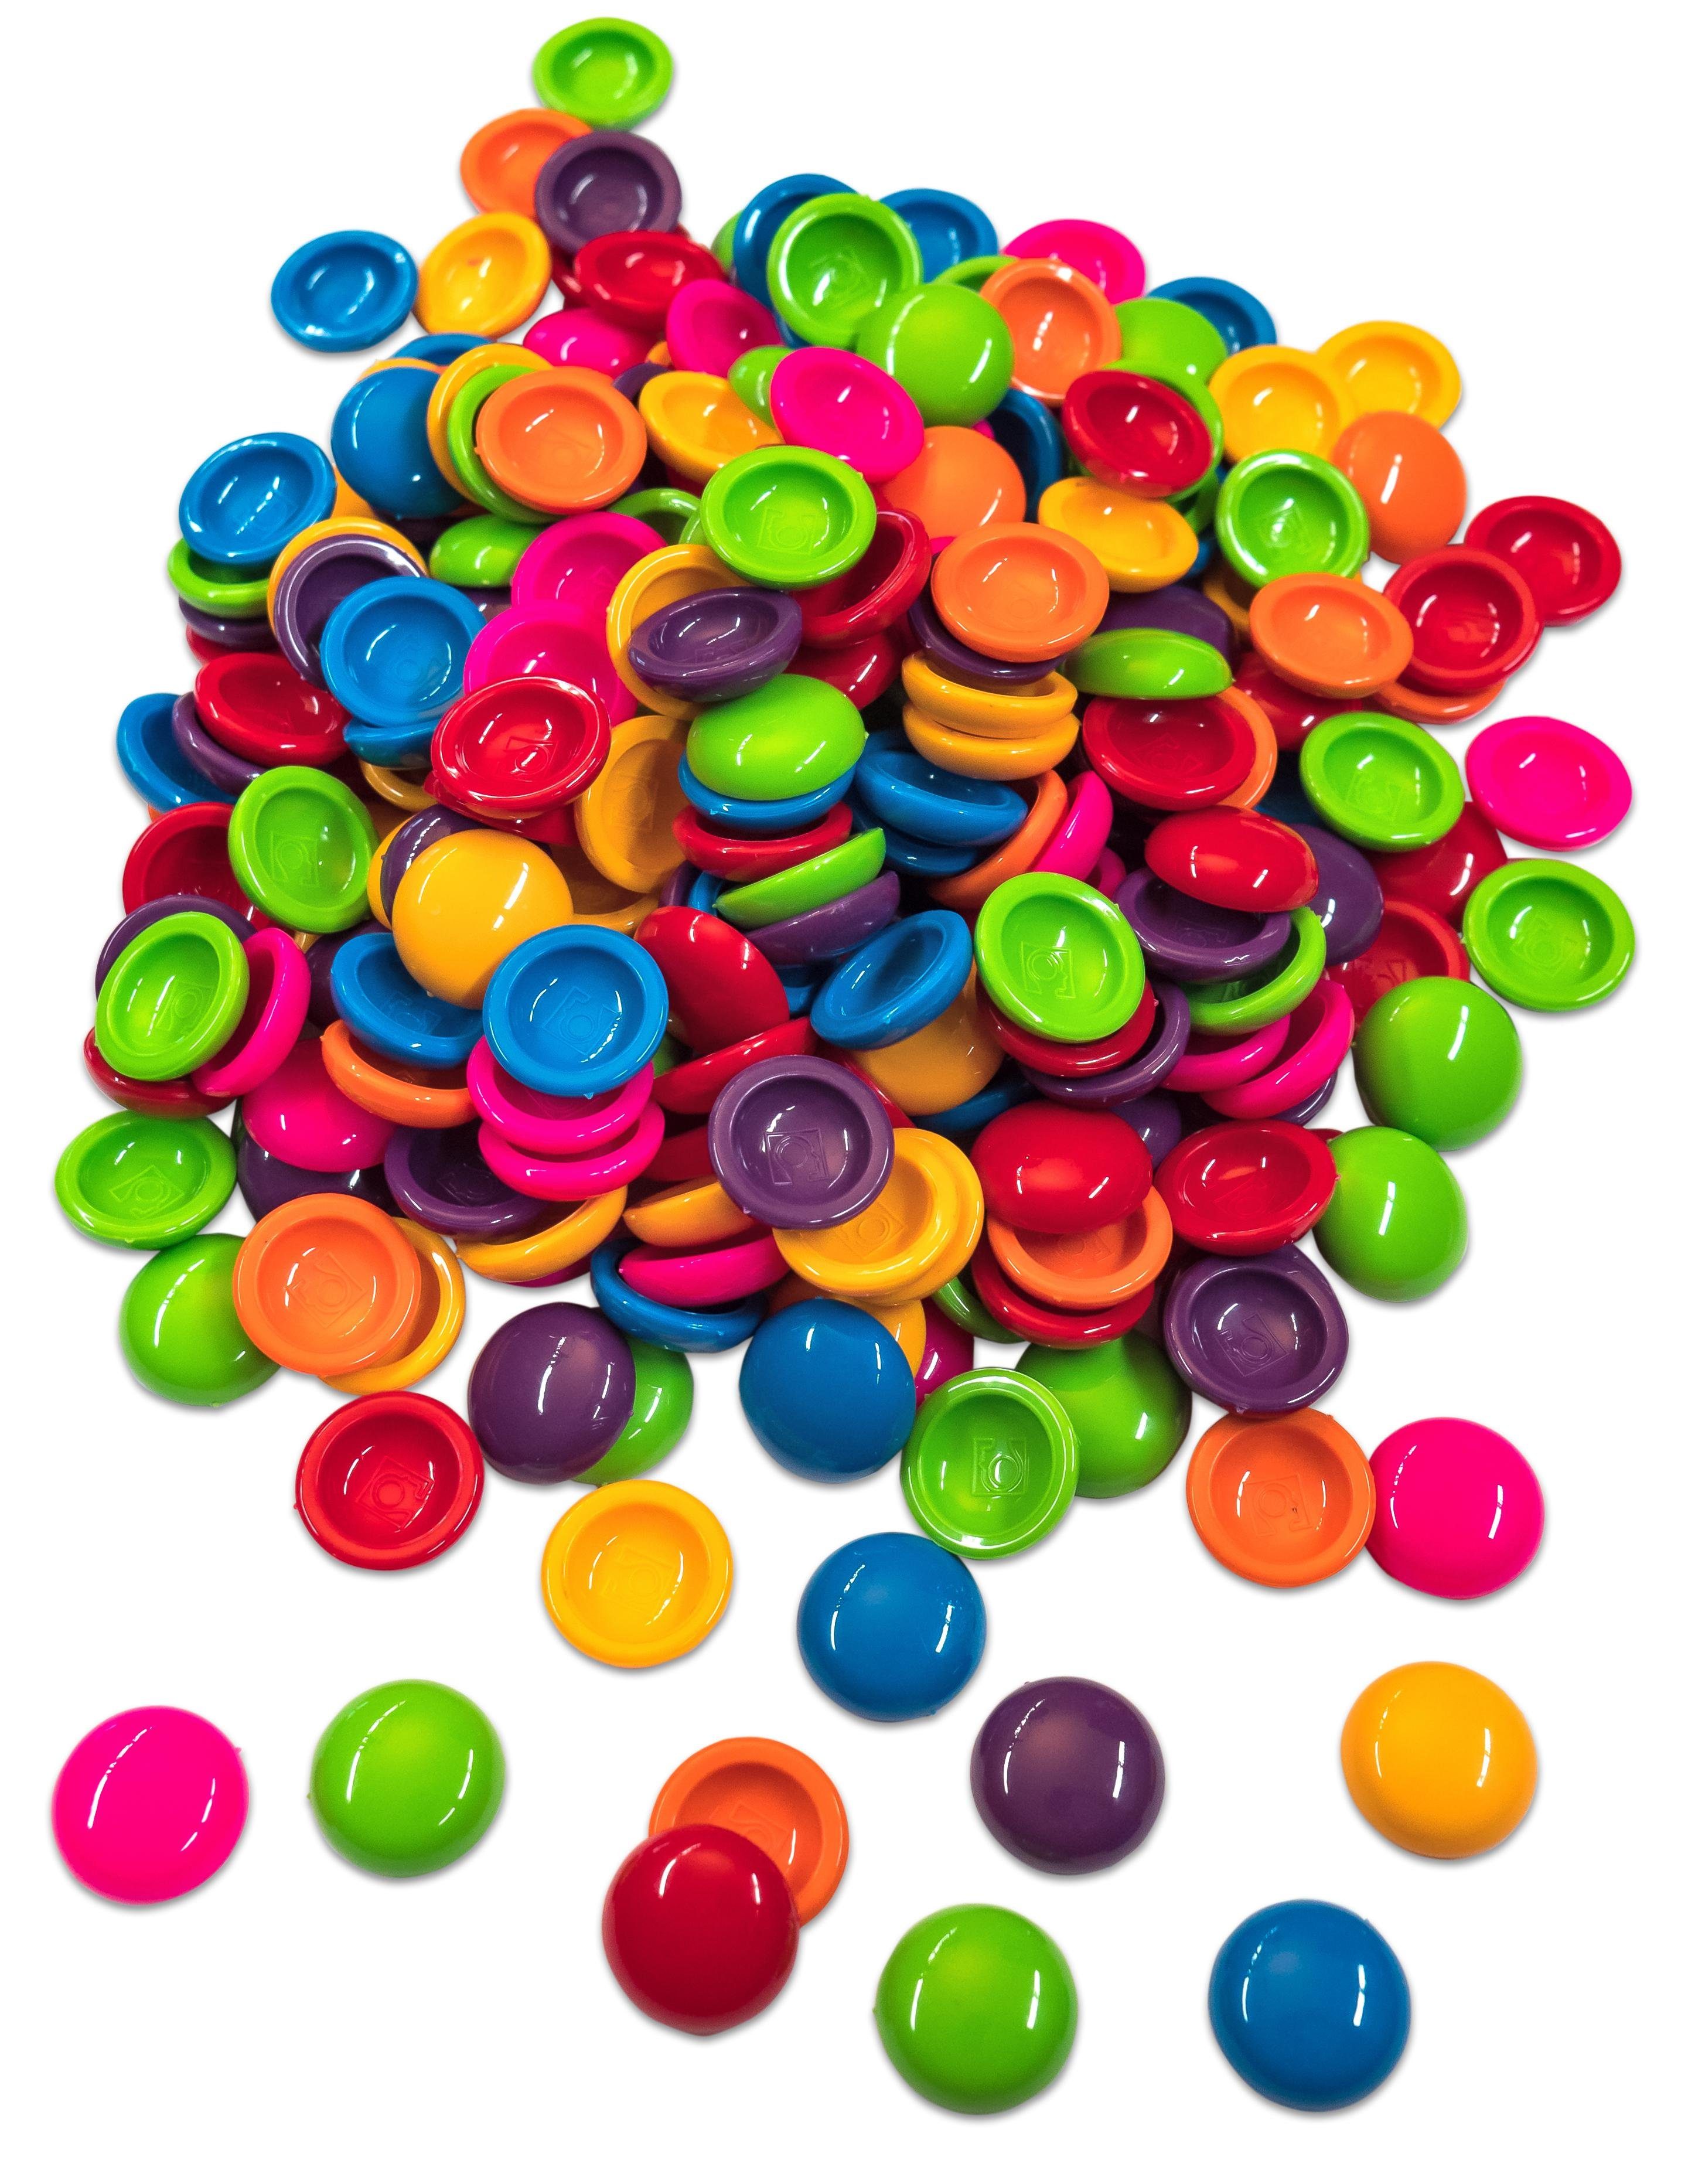 Betzold Lernspielzeug Muggelsteine Ø 20 mm 250 Stück Muggel-Steine bunt gemischte Farben